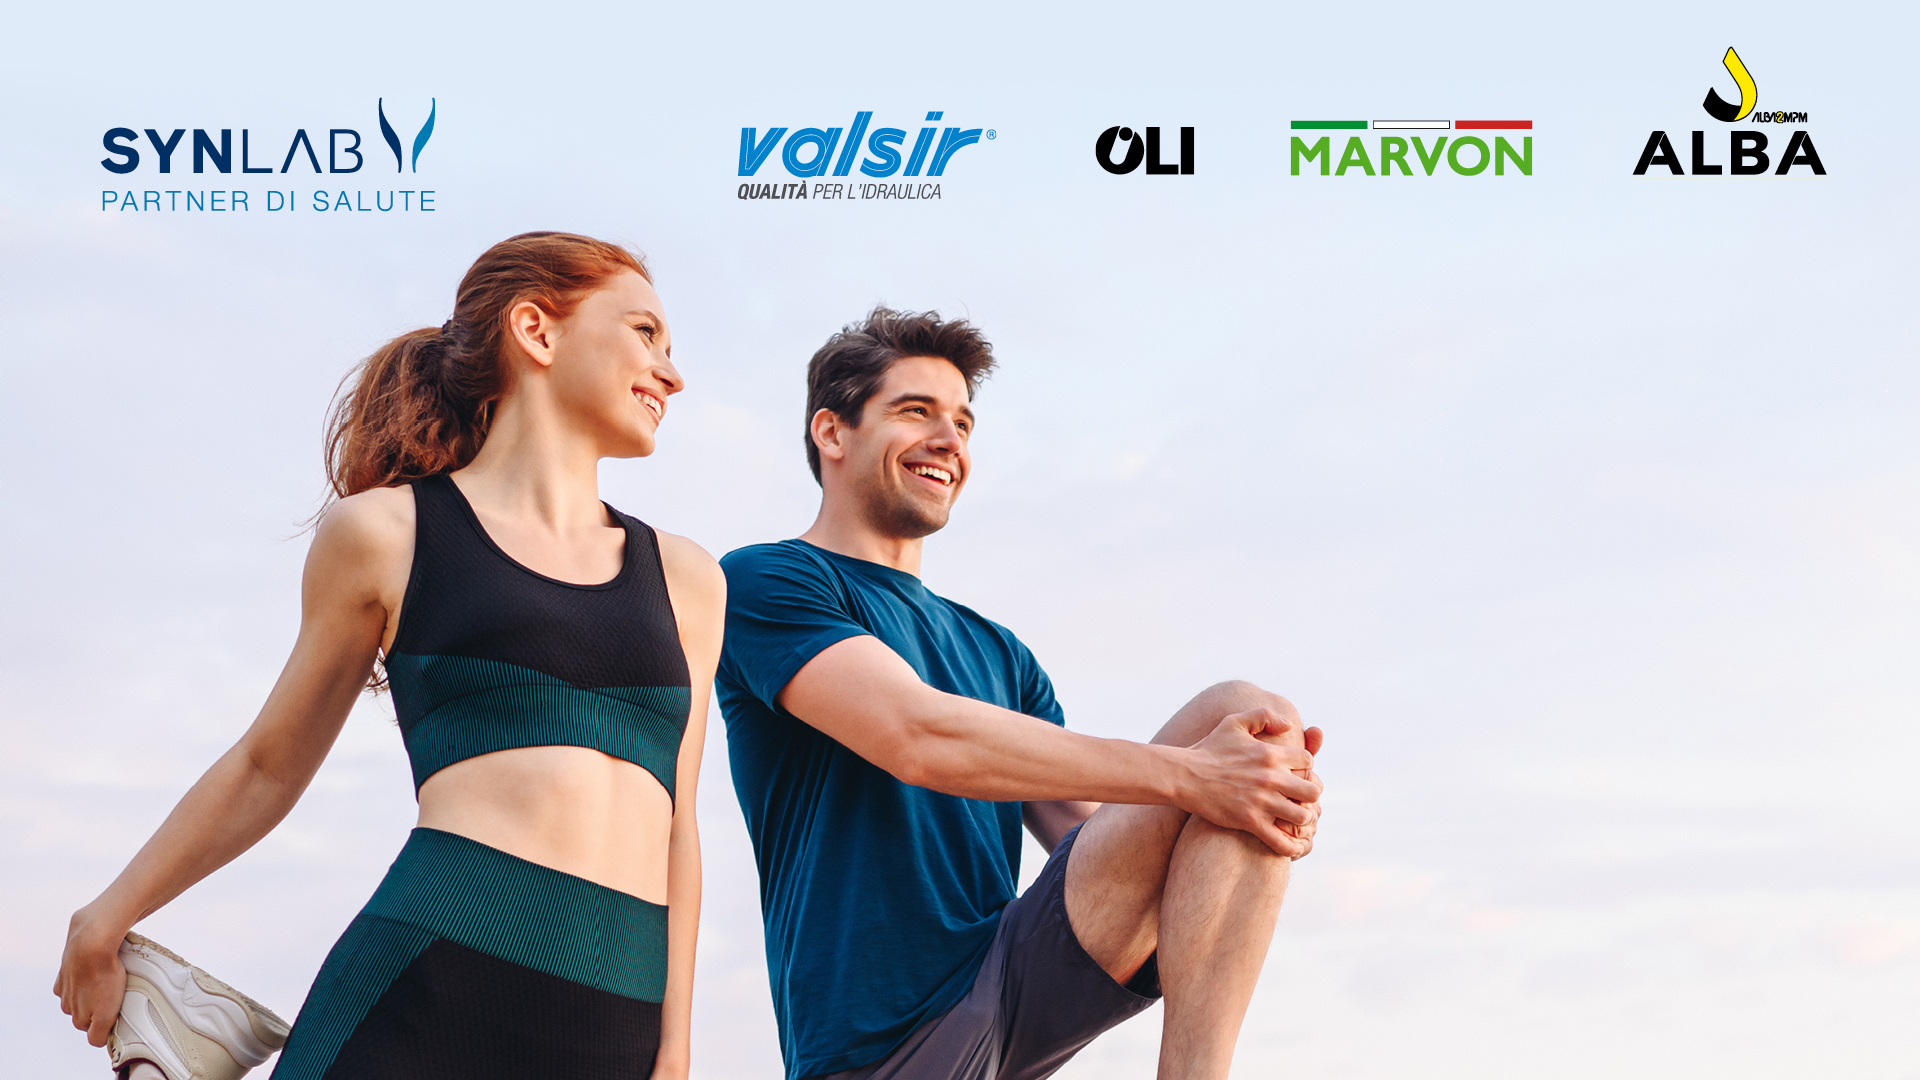 SYNLAB Partner di Salute delle aziende del Gruppo VALSIR con un progetto di sensibilizzazione per tutti i collaboratori